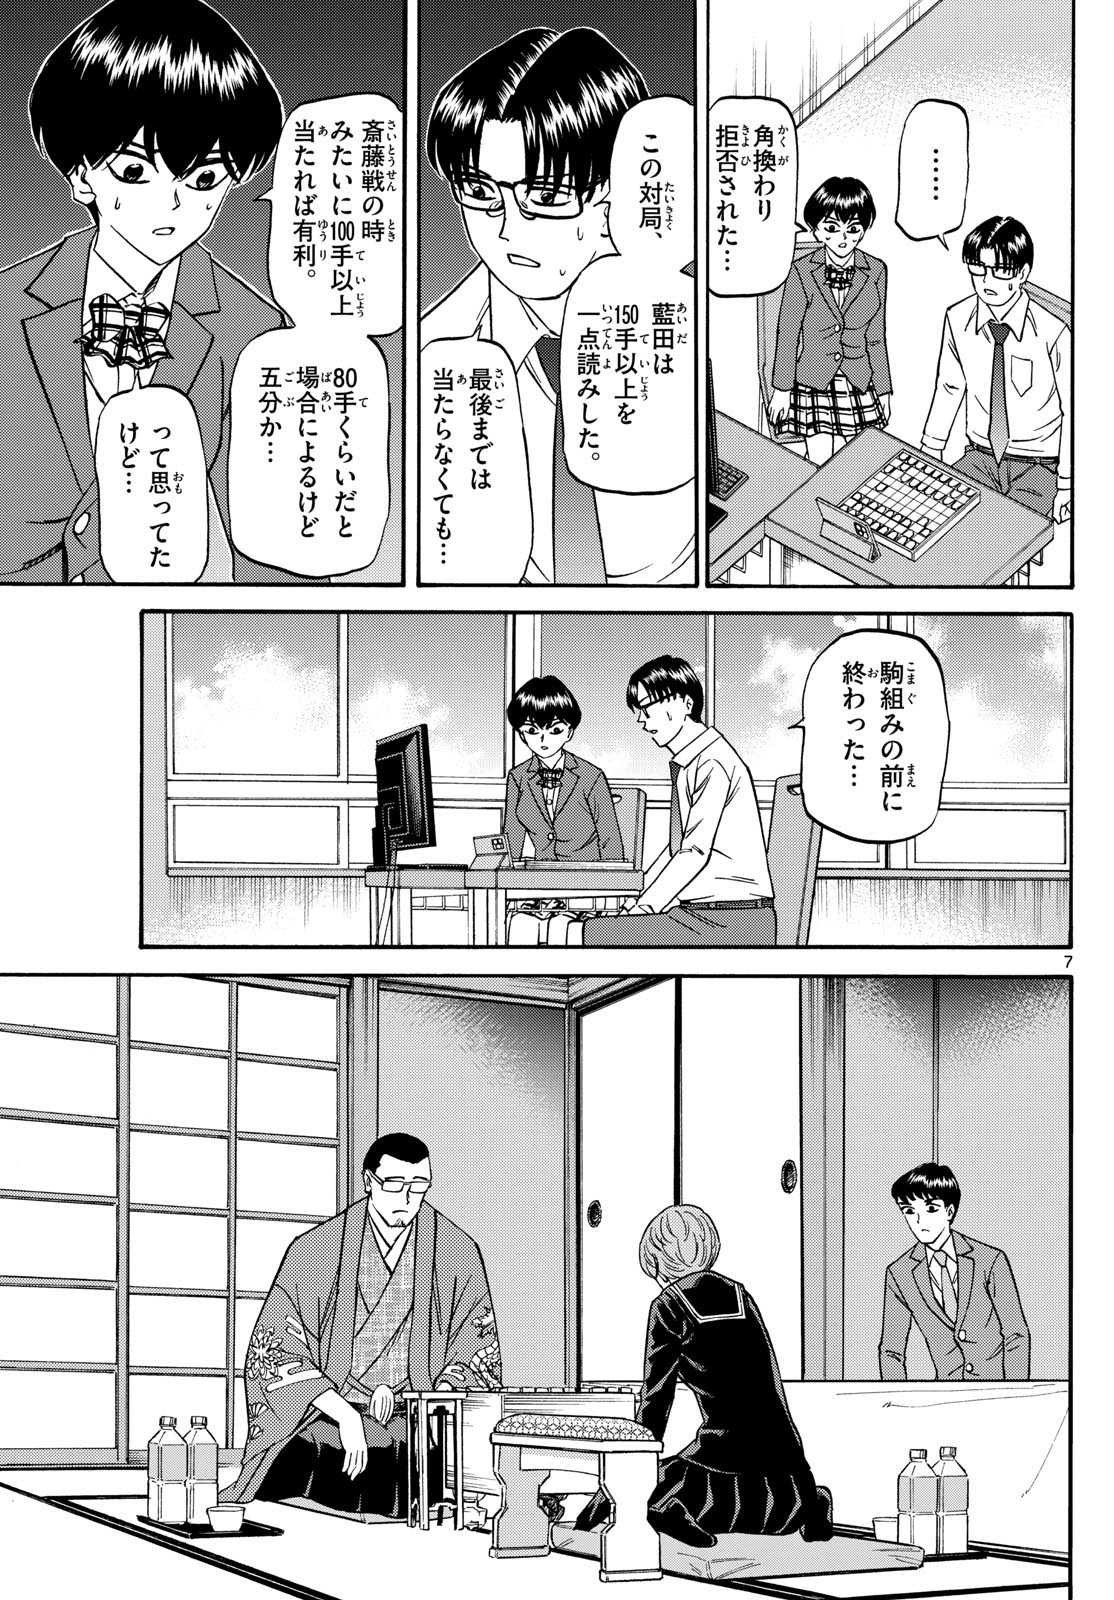 Ryu-to-Ichigo - Chapter 159 - Page 7